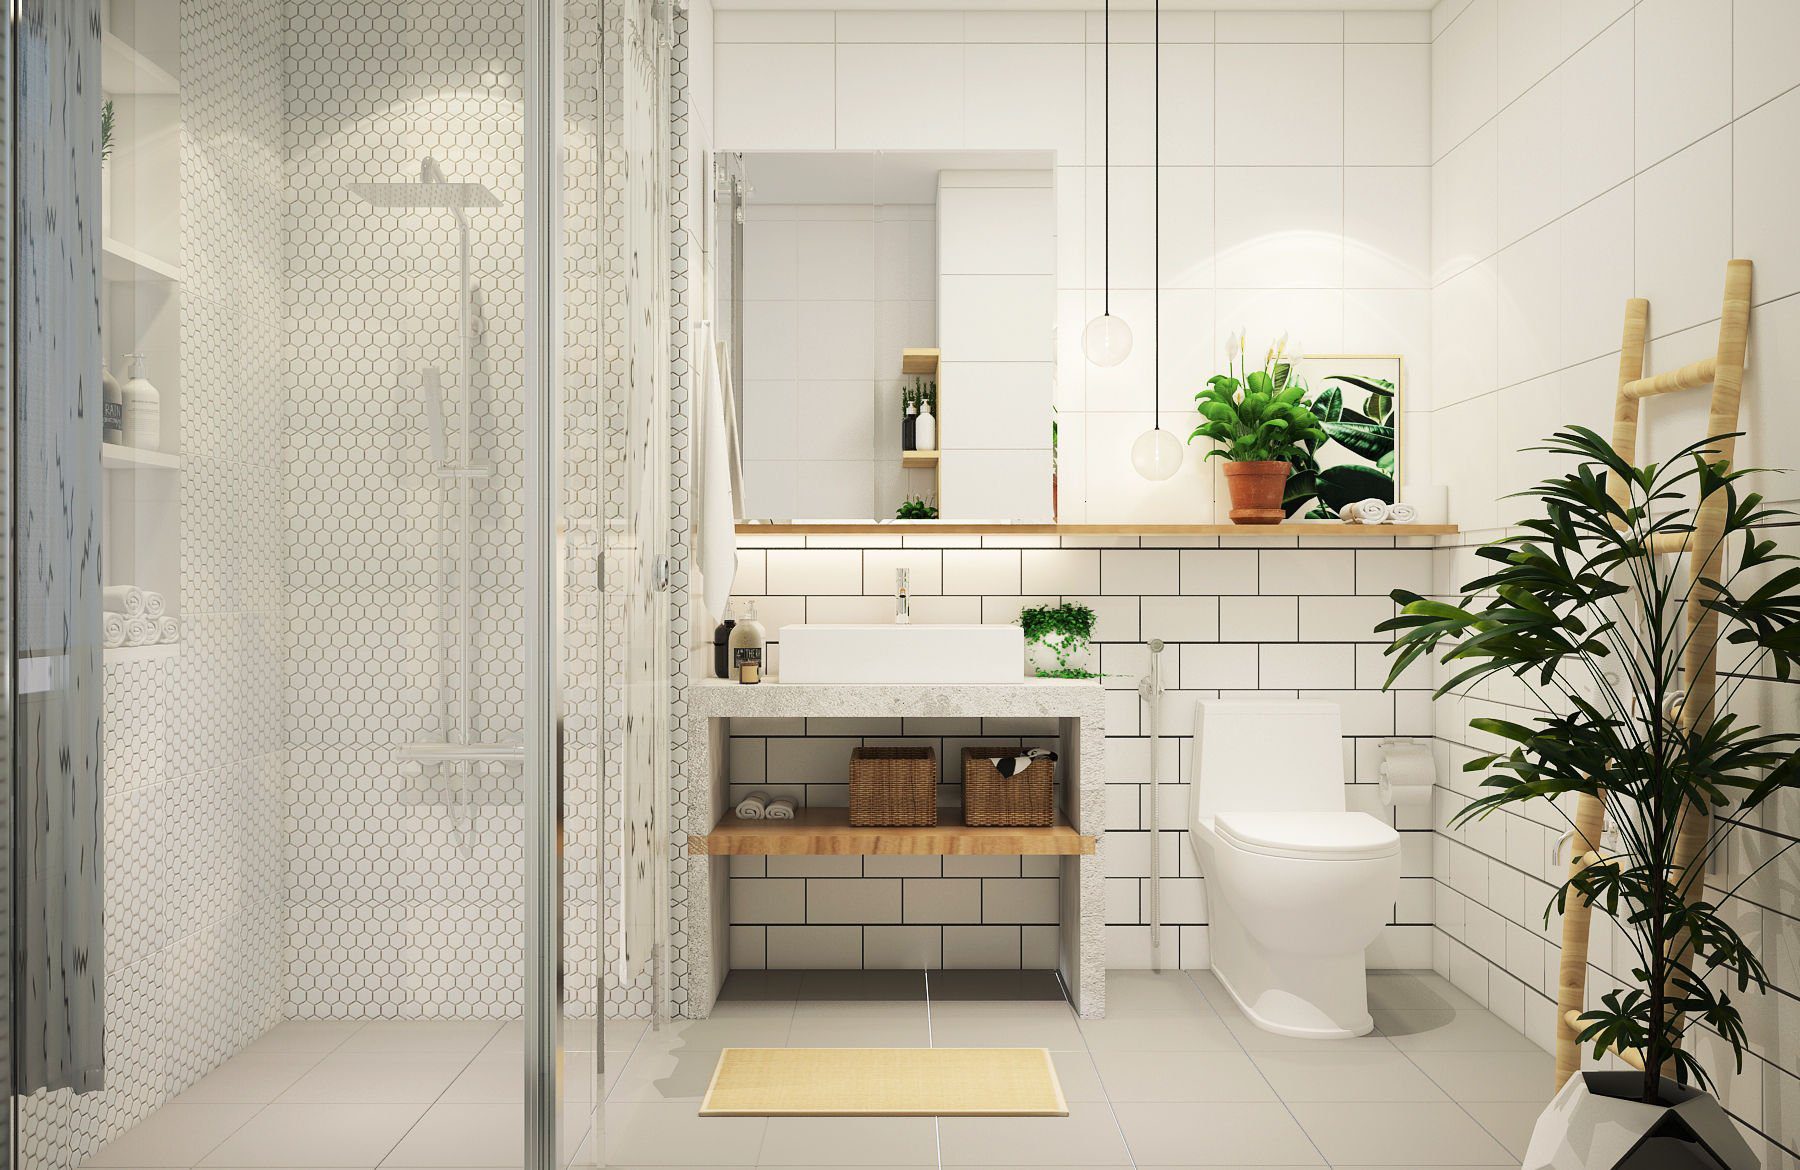 Mẫu nhà vệ sinh, nhà tắm đẹp với diện tích nhỏ đơn giản, hiện đại